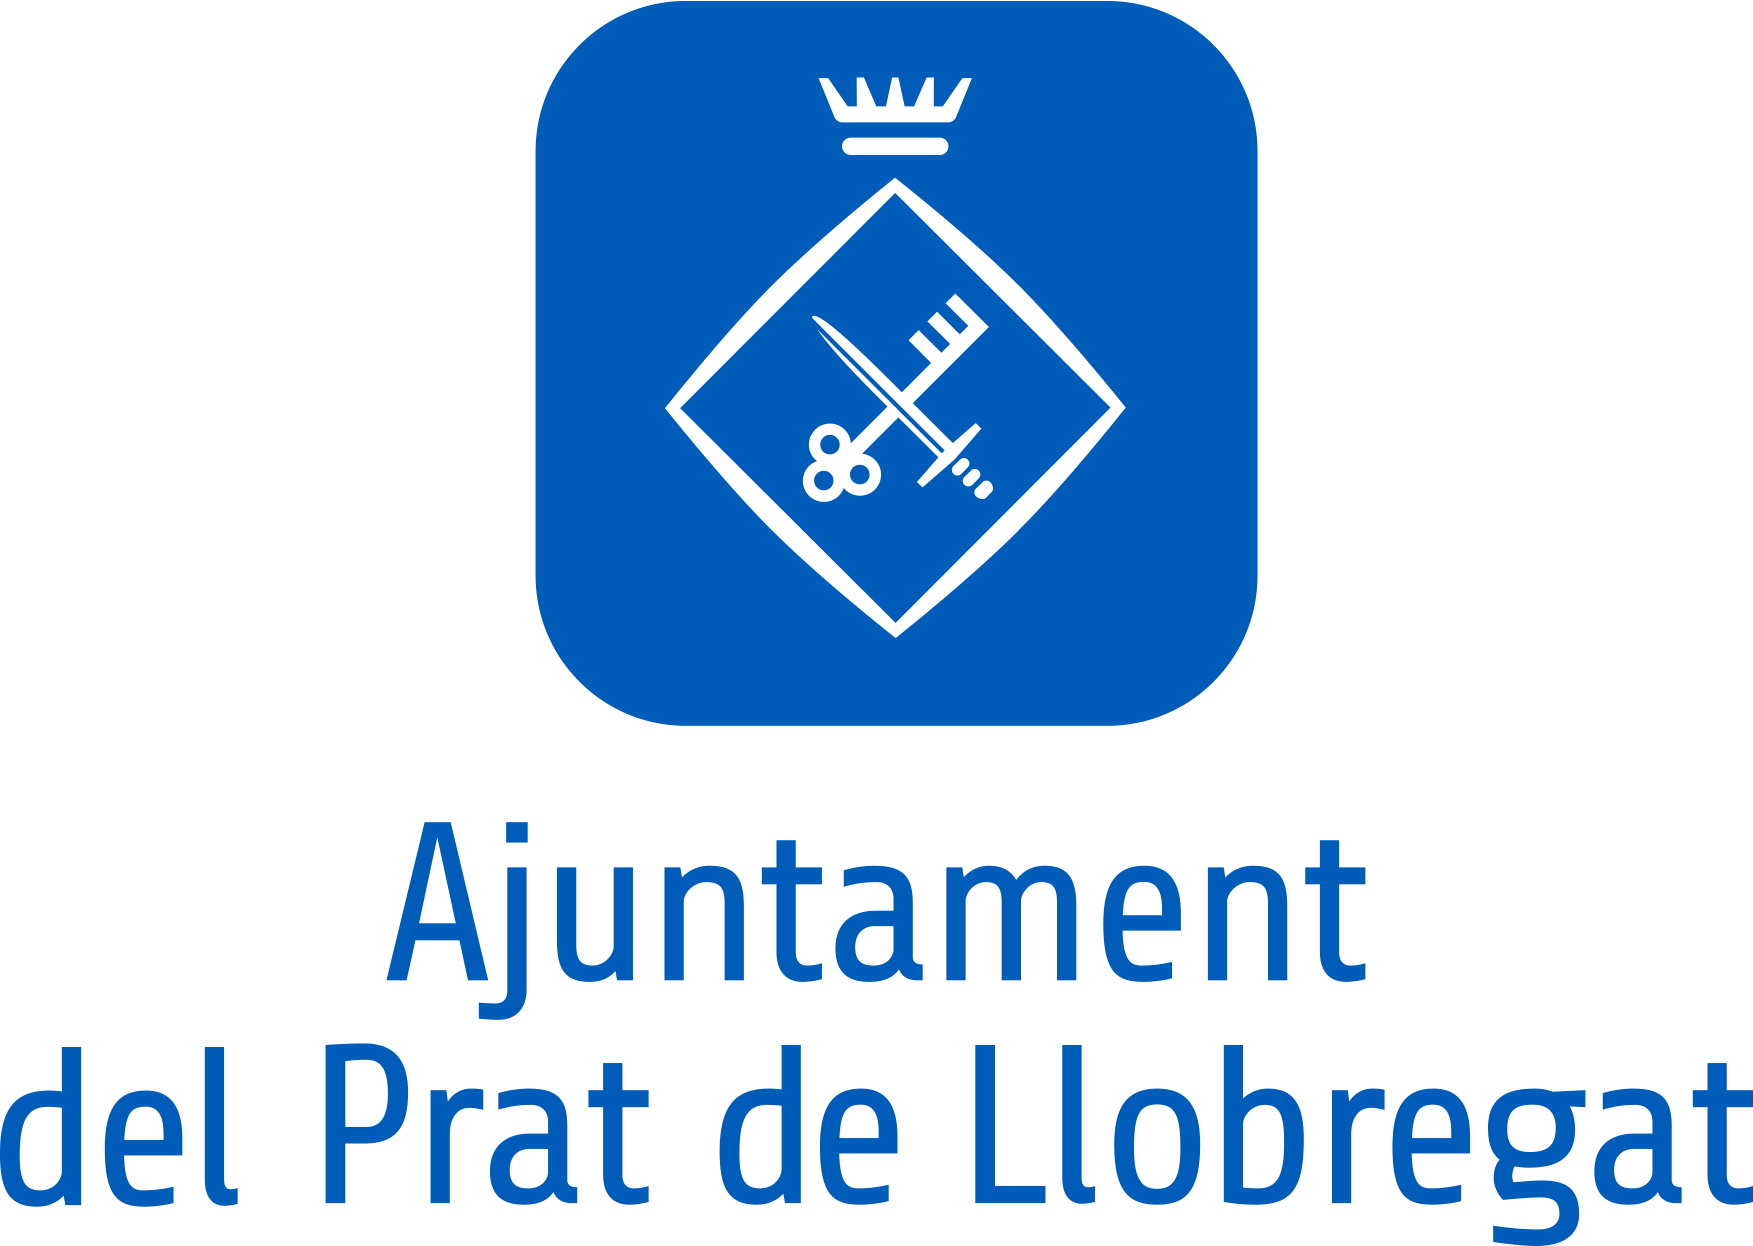 Ajuntament del Prat del Llobregat